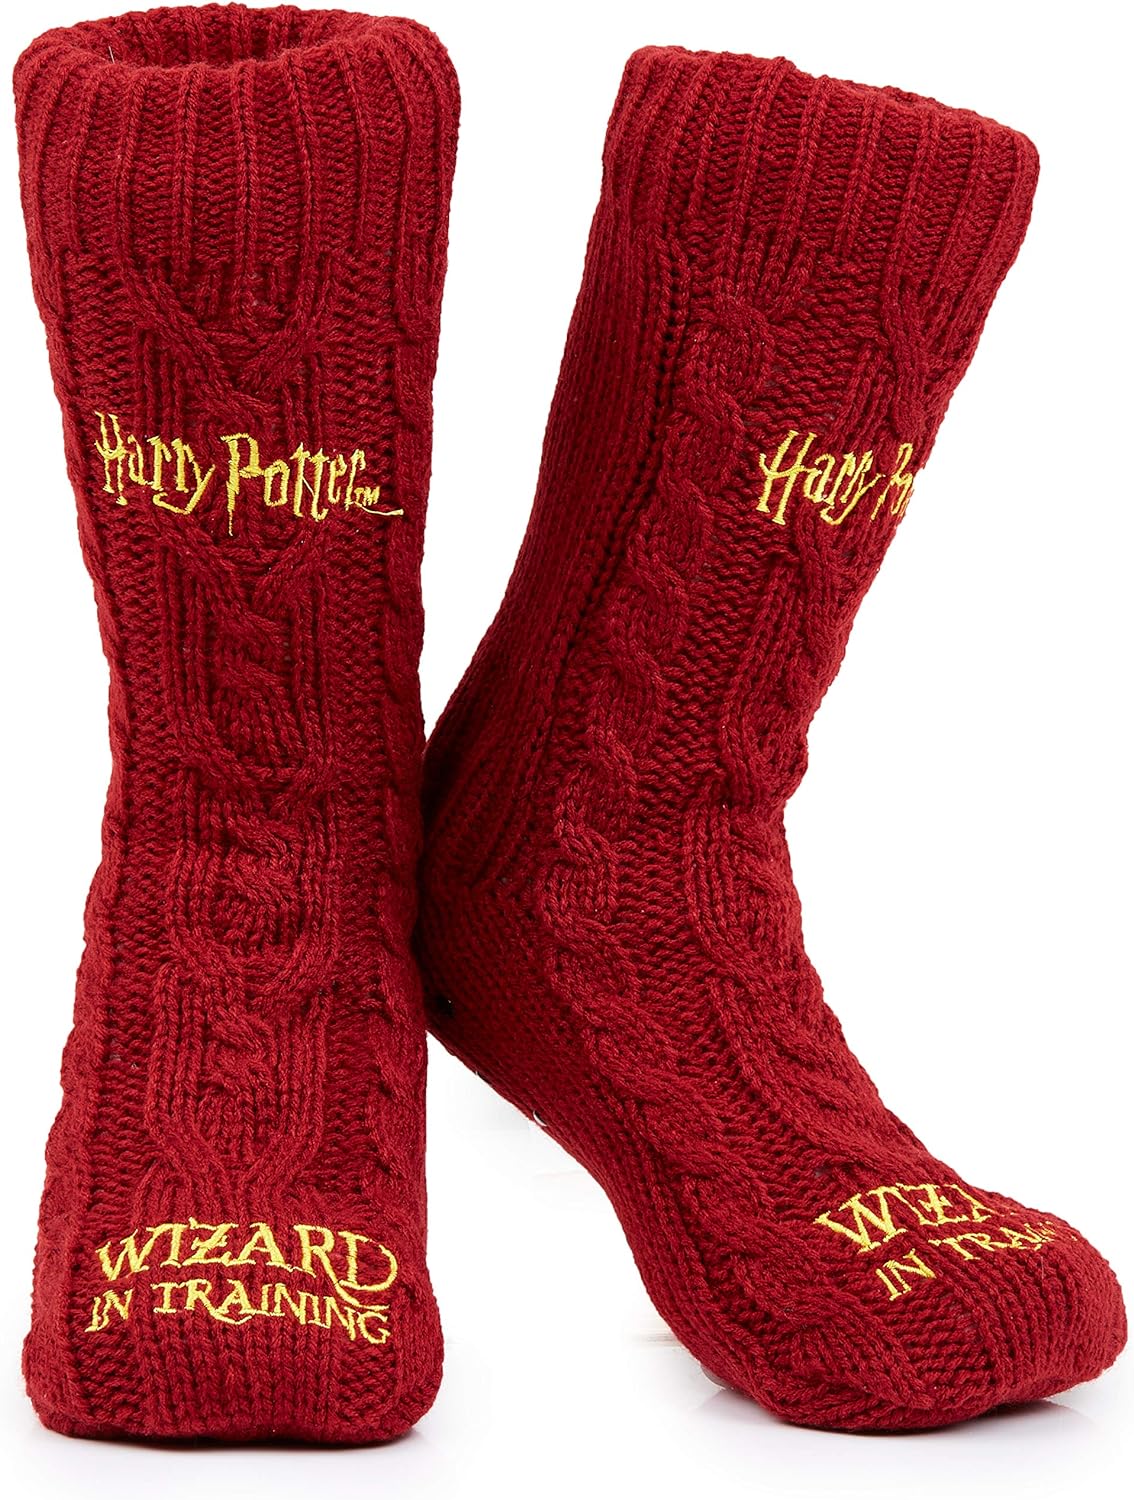 Harry Potter Slipper Socks, Women Knitted Fluffy Socks, Xmas Stocking Fillers